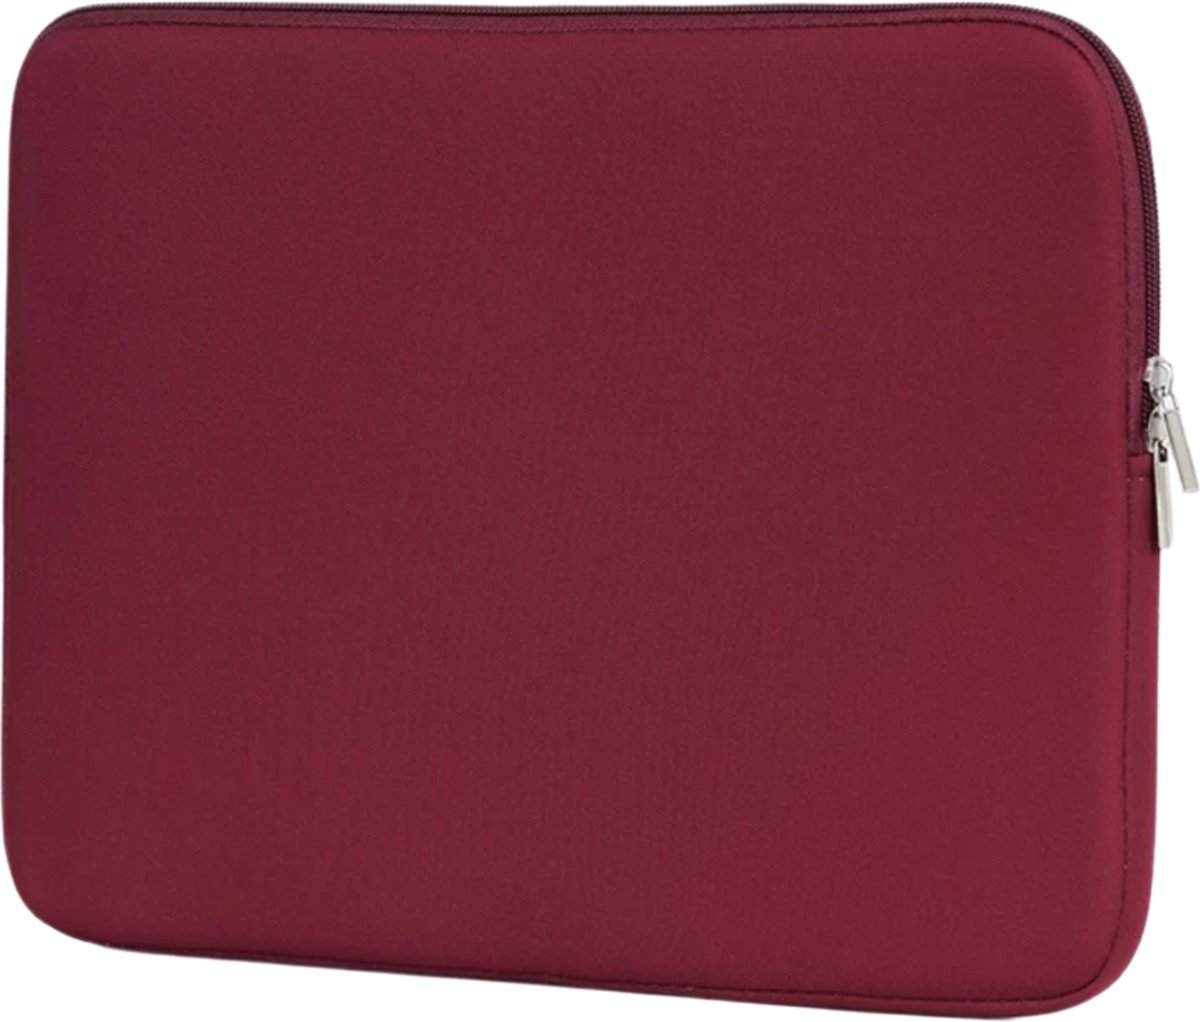 Laptop sleeve – universeel – 14,6 inch – waterbestendig – bordeaux rood - Schokproof